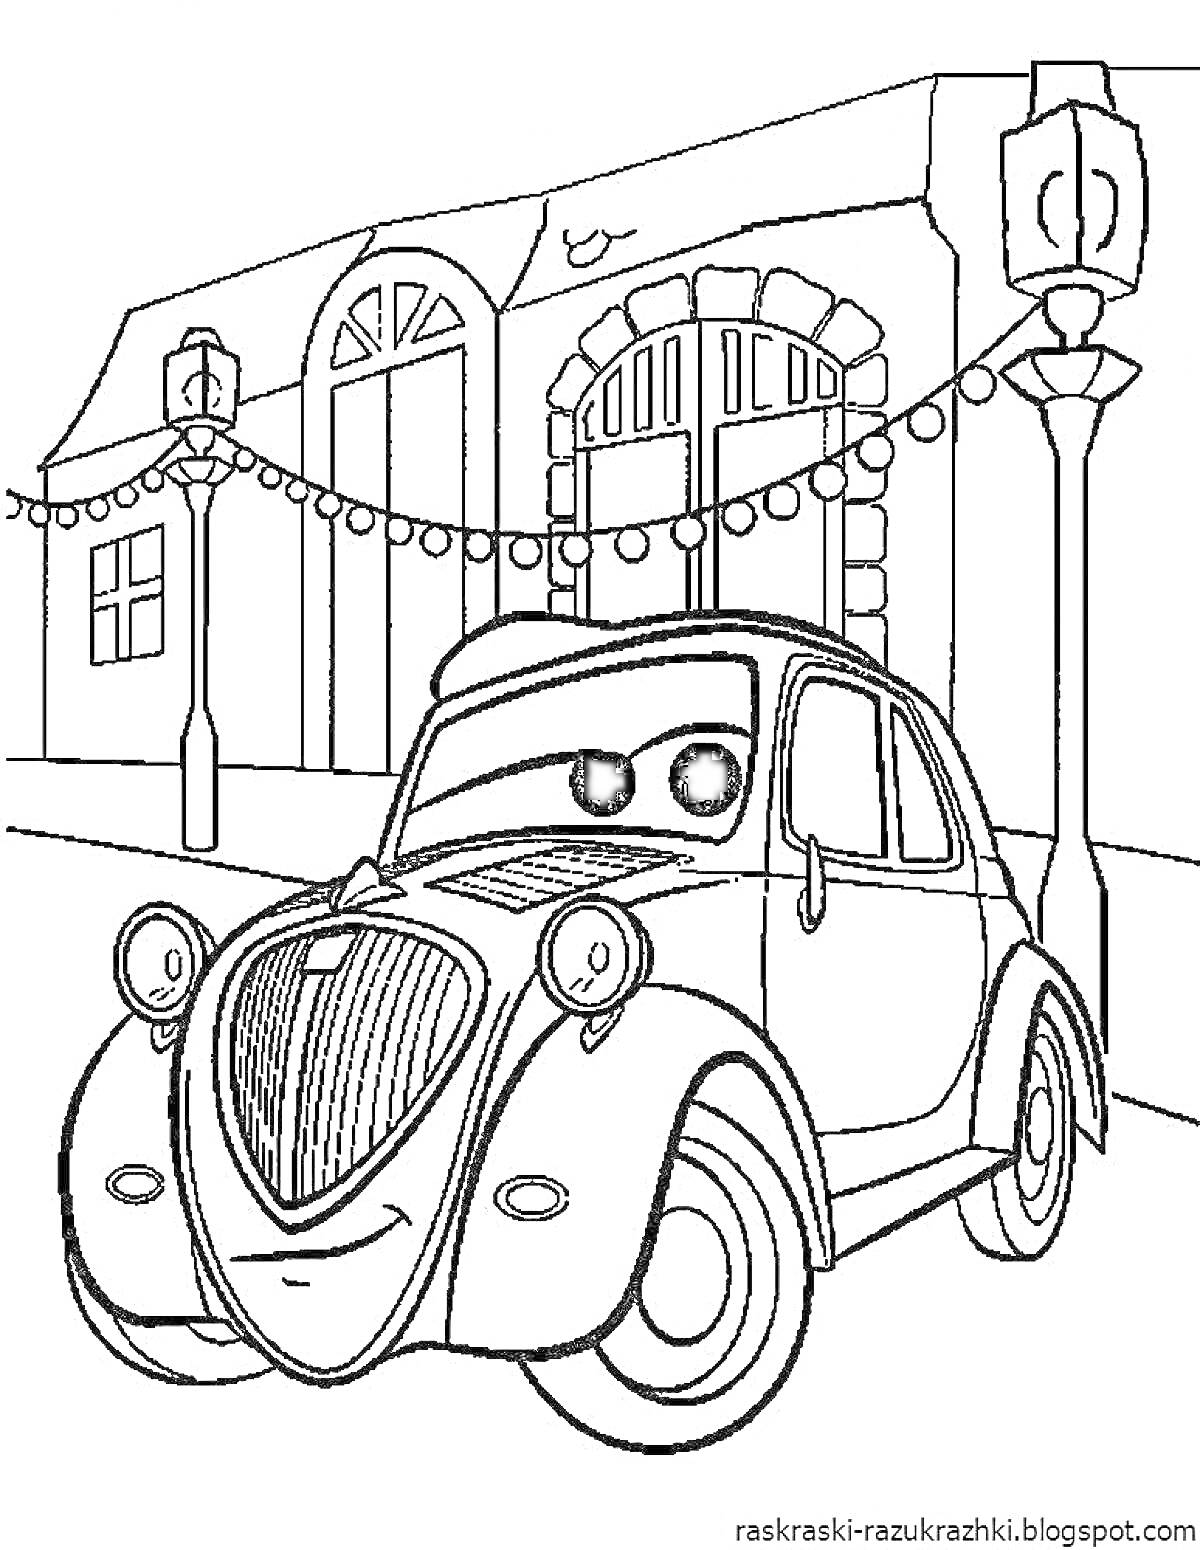 Машина с большими глазами на фоне здания с арками и лампами, украшенного гирляндами лампочек